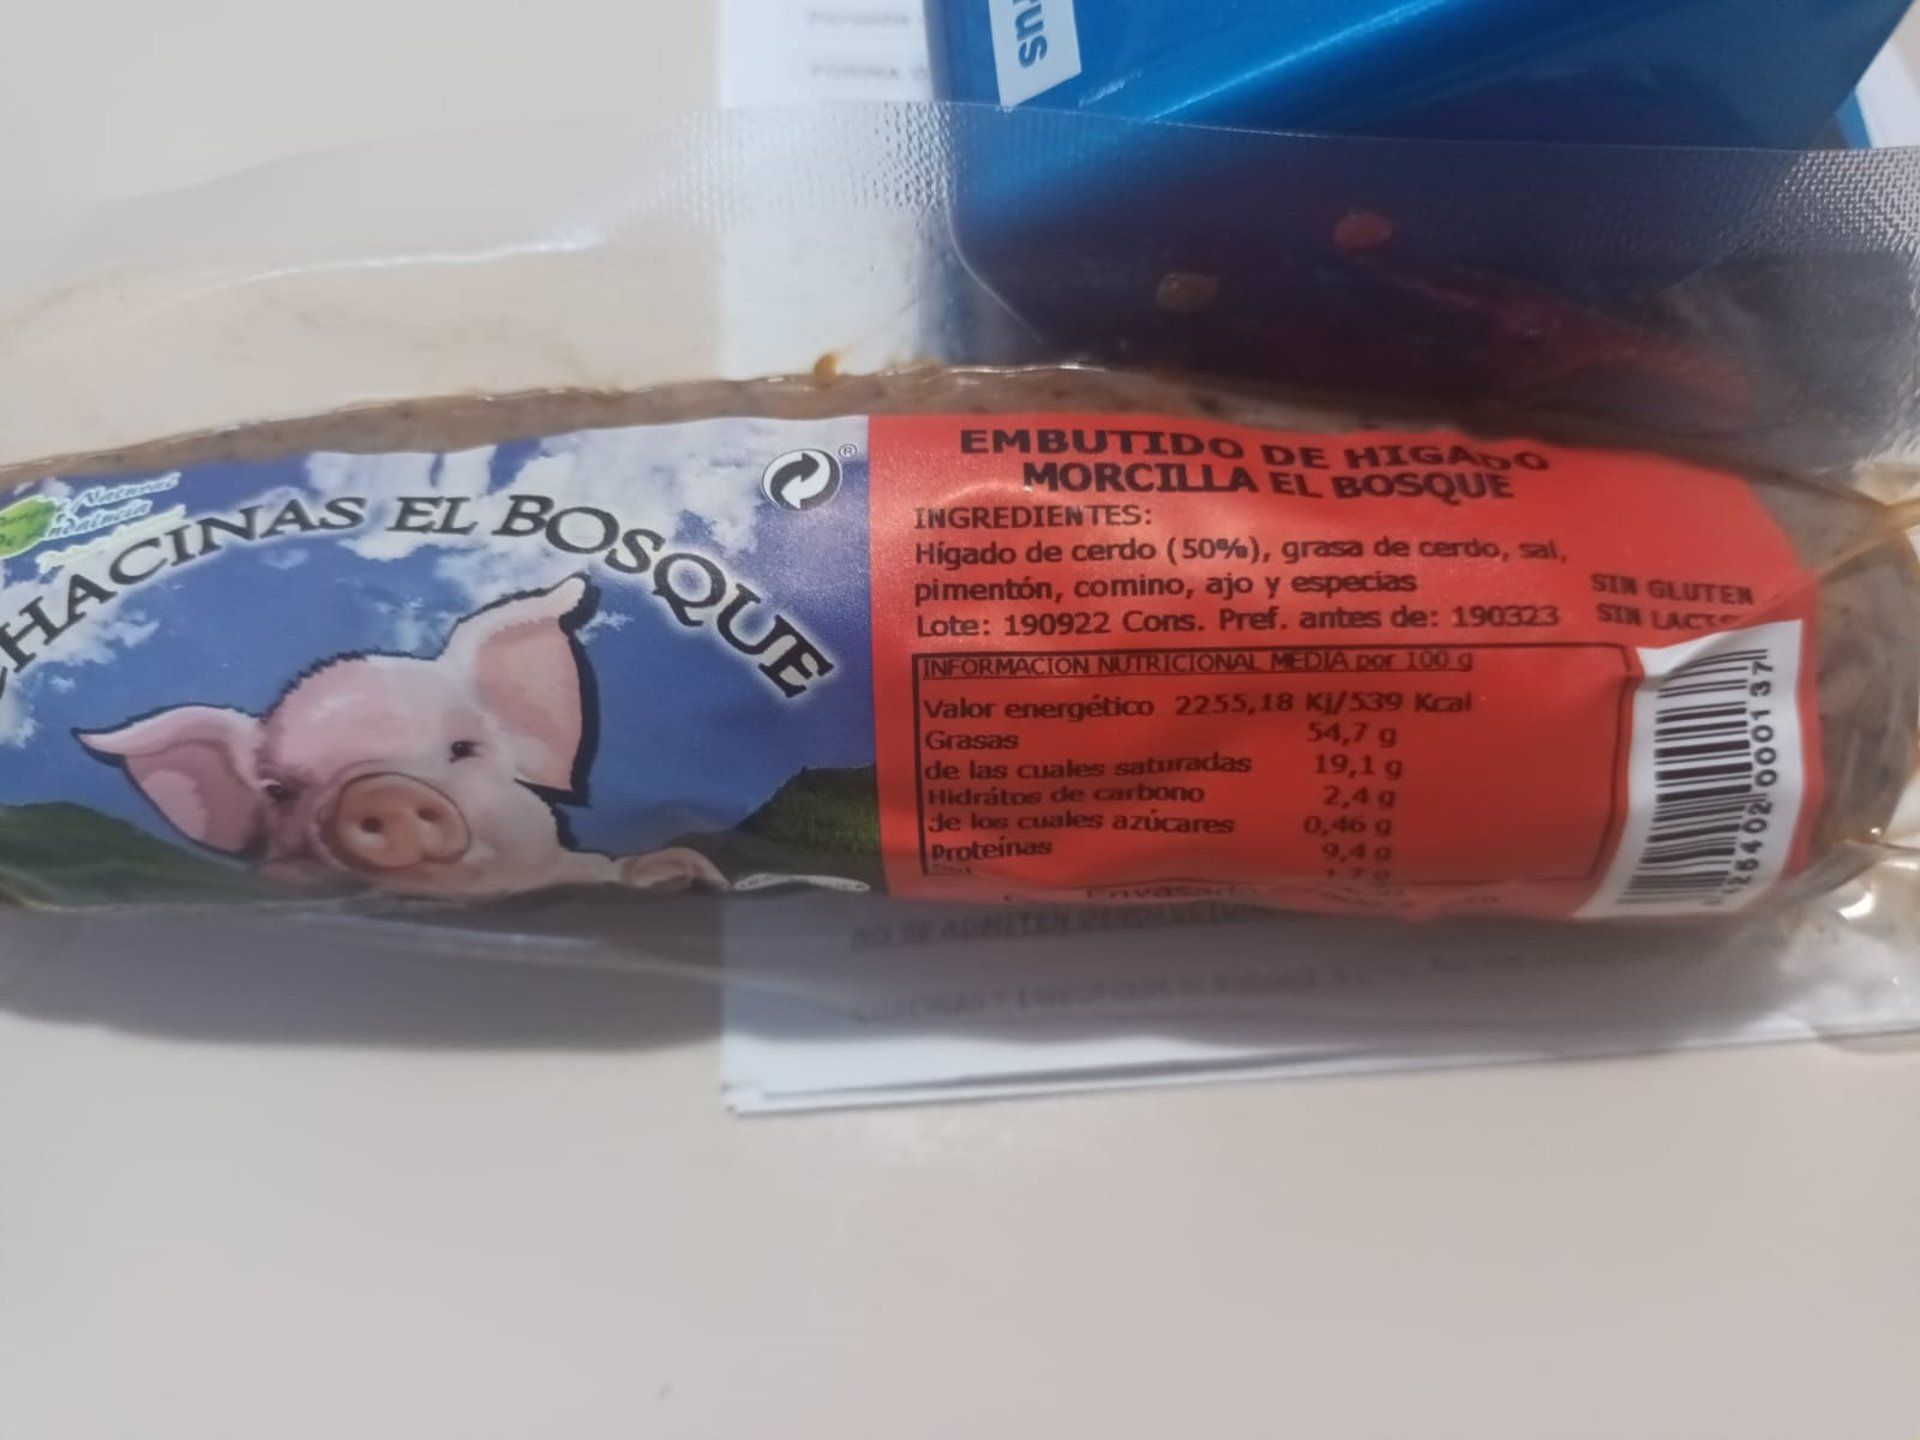 Alerta sanitaria: retiran del mercado un lote de chorizo de la marca Chacinas El Bosque al detectar listeria